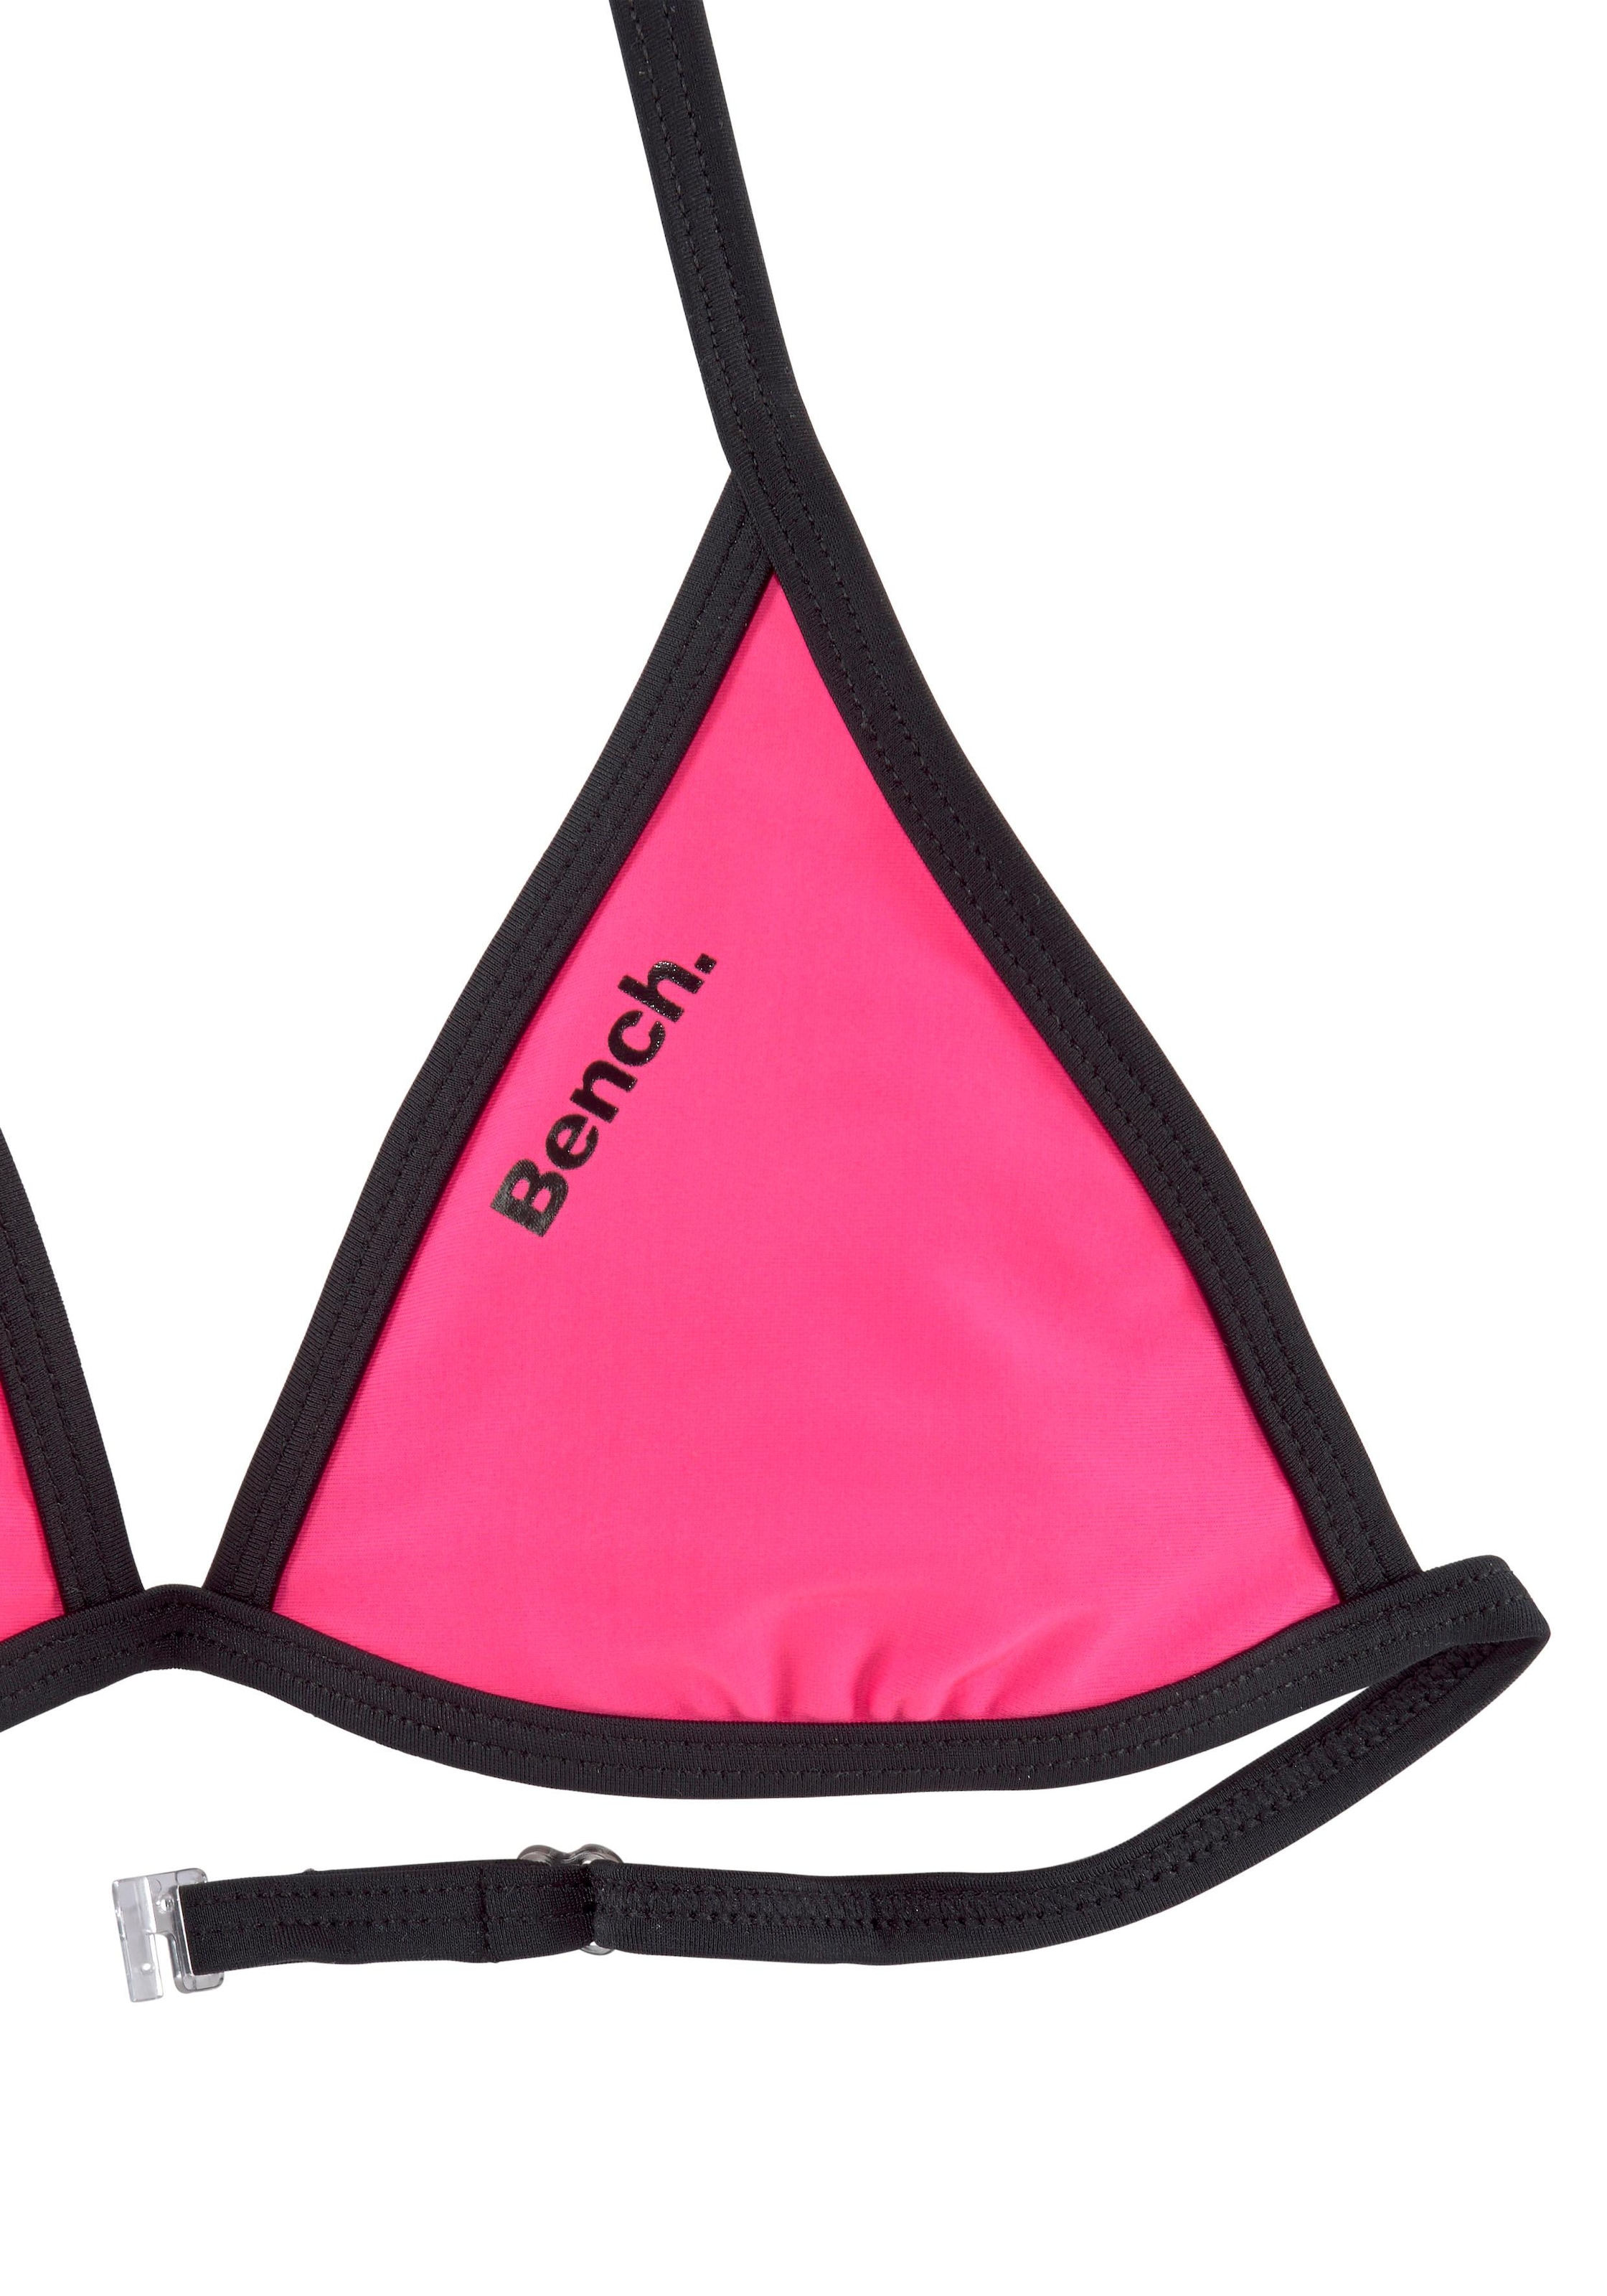 Logoprint Triangel-Bikini, an mit Hose bei Top und Bench.